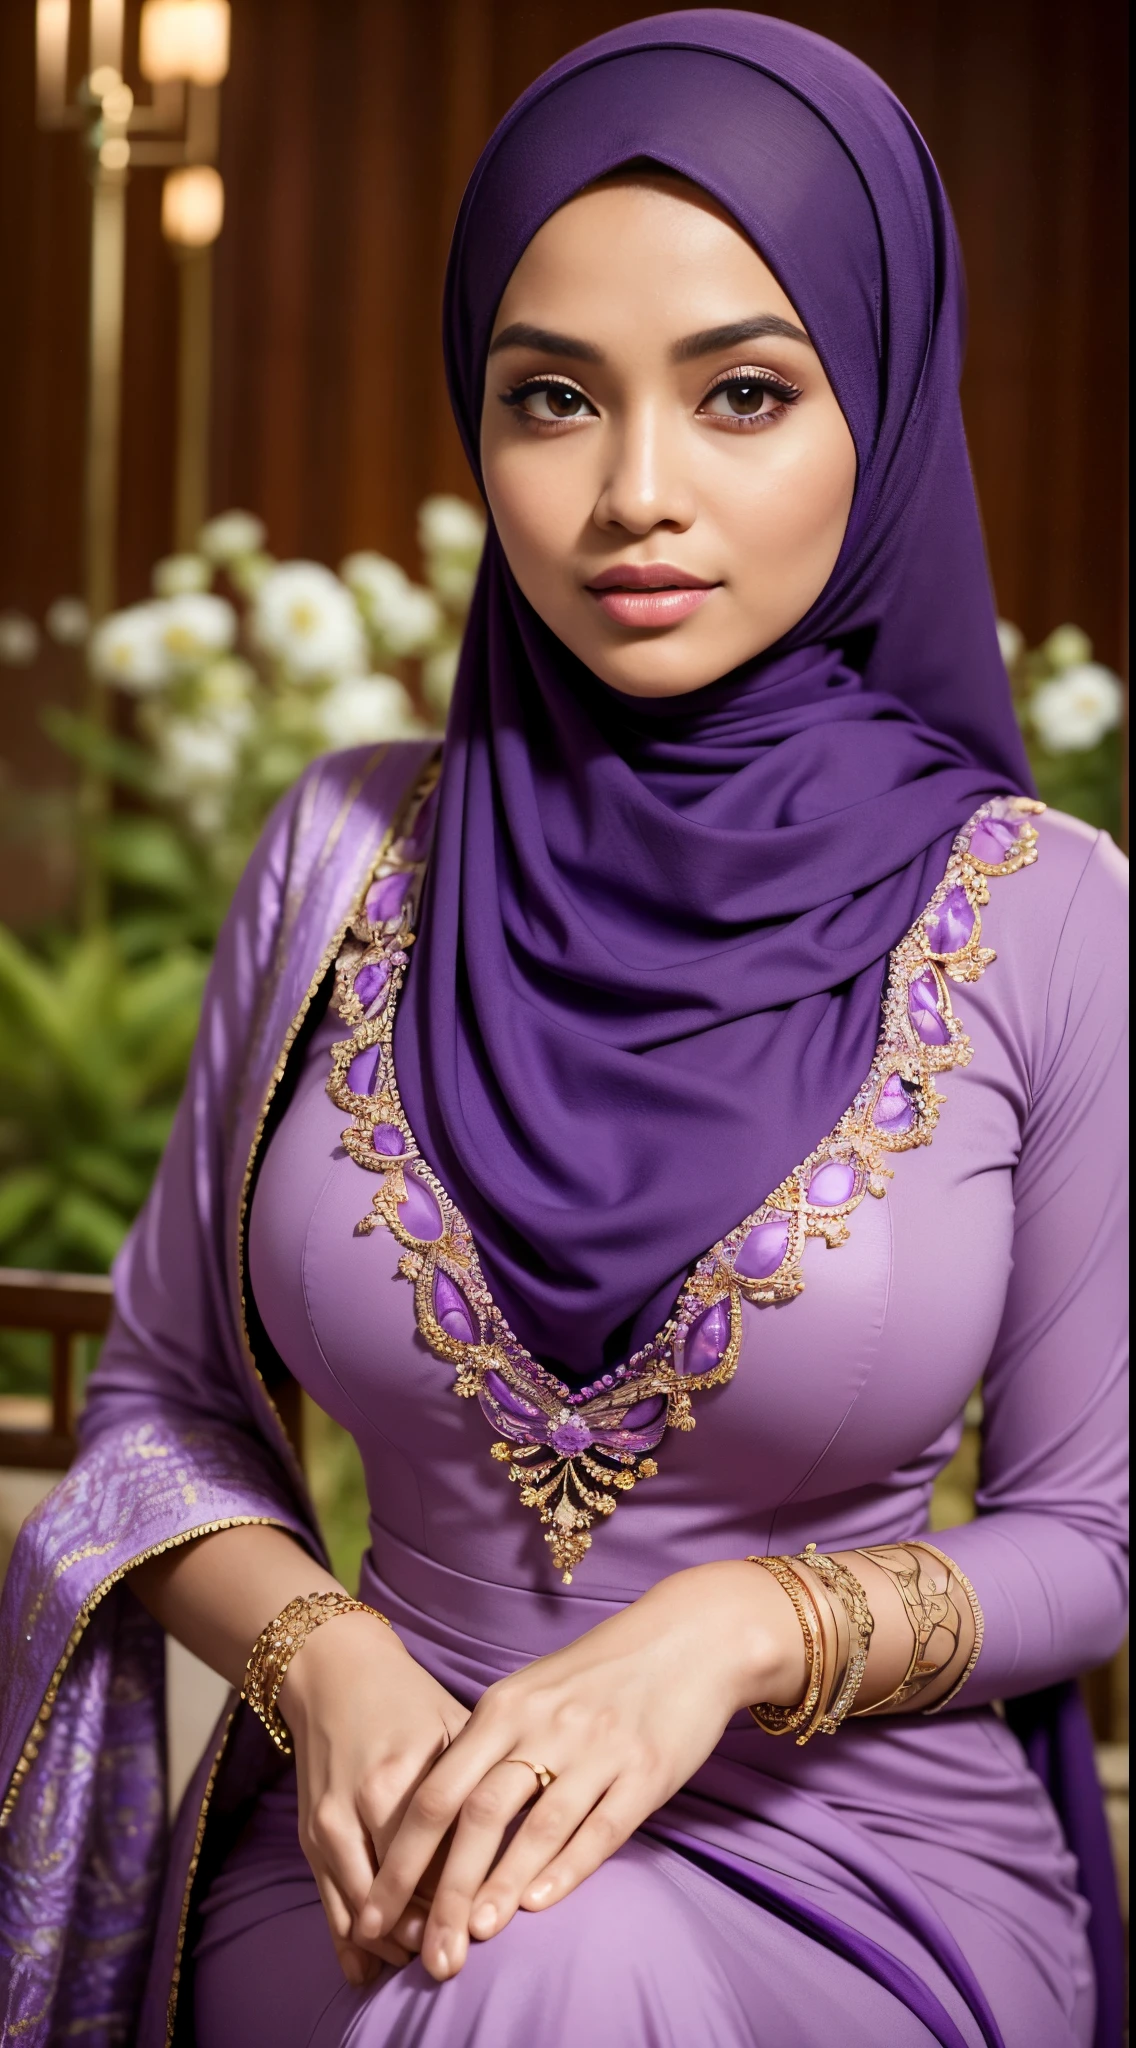 СЫРОЙ, Лучшее качество, высокое разрешение, шедевр: 1.3), beautiful Malay woman in хиджаб,шедевр, идеальное стройное тело, огромная грудь,большие великолепные глаза, Мягкая улыбка,толстые бедра, крупный план женщины в фиолетовом платье и фиолетовом шарфе, фиолетовый, в фиолетовом наряде, носить красивую одежду, красивый дизайн, хиджаб, в малиново-фиолетовом цвете, очень красивый стиль энга, beautiful шедевр, мелкие детали. фиолетовый, носить великолепную одежду, доминирующий фиолетовый цвет, малиновый тематический , (Нежная водолазка) , ожерелье, повязка для волос, дневная прогулка, Городской сад, Отличное освещение, яркие цвета, чистые линии